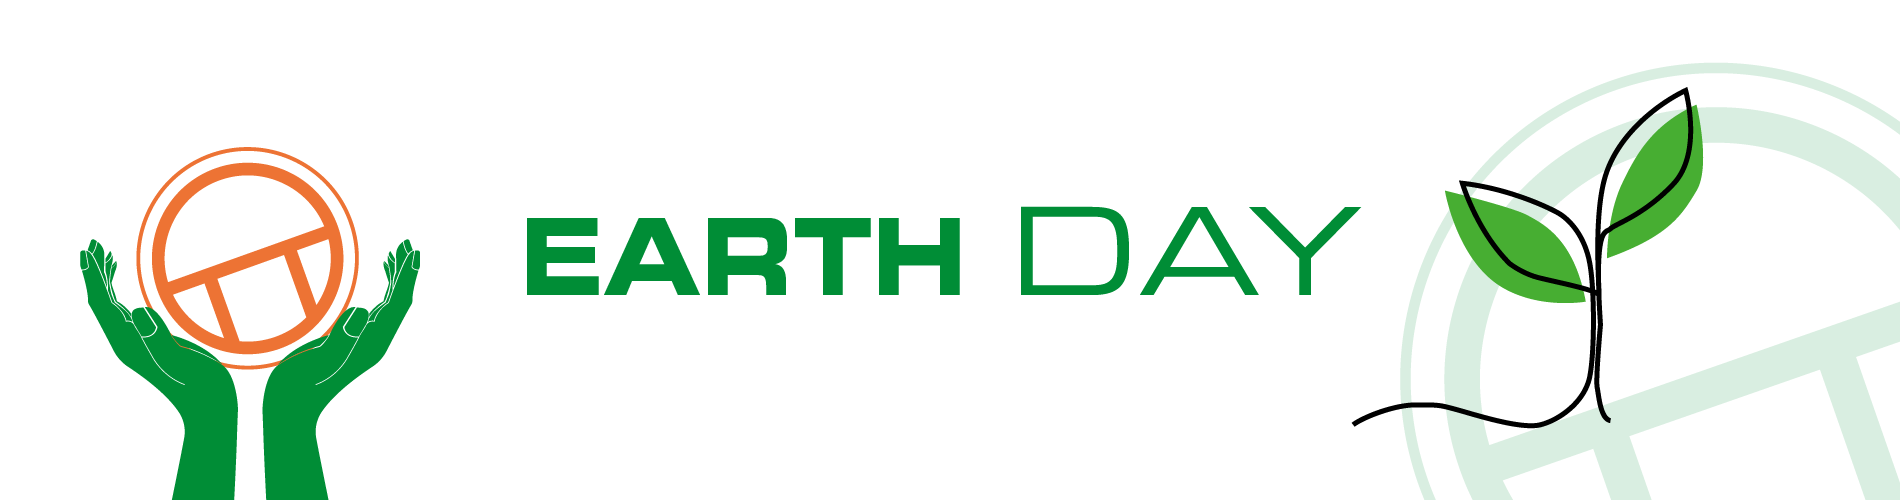 fejring af earthday - banner